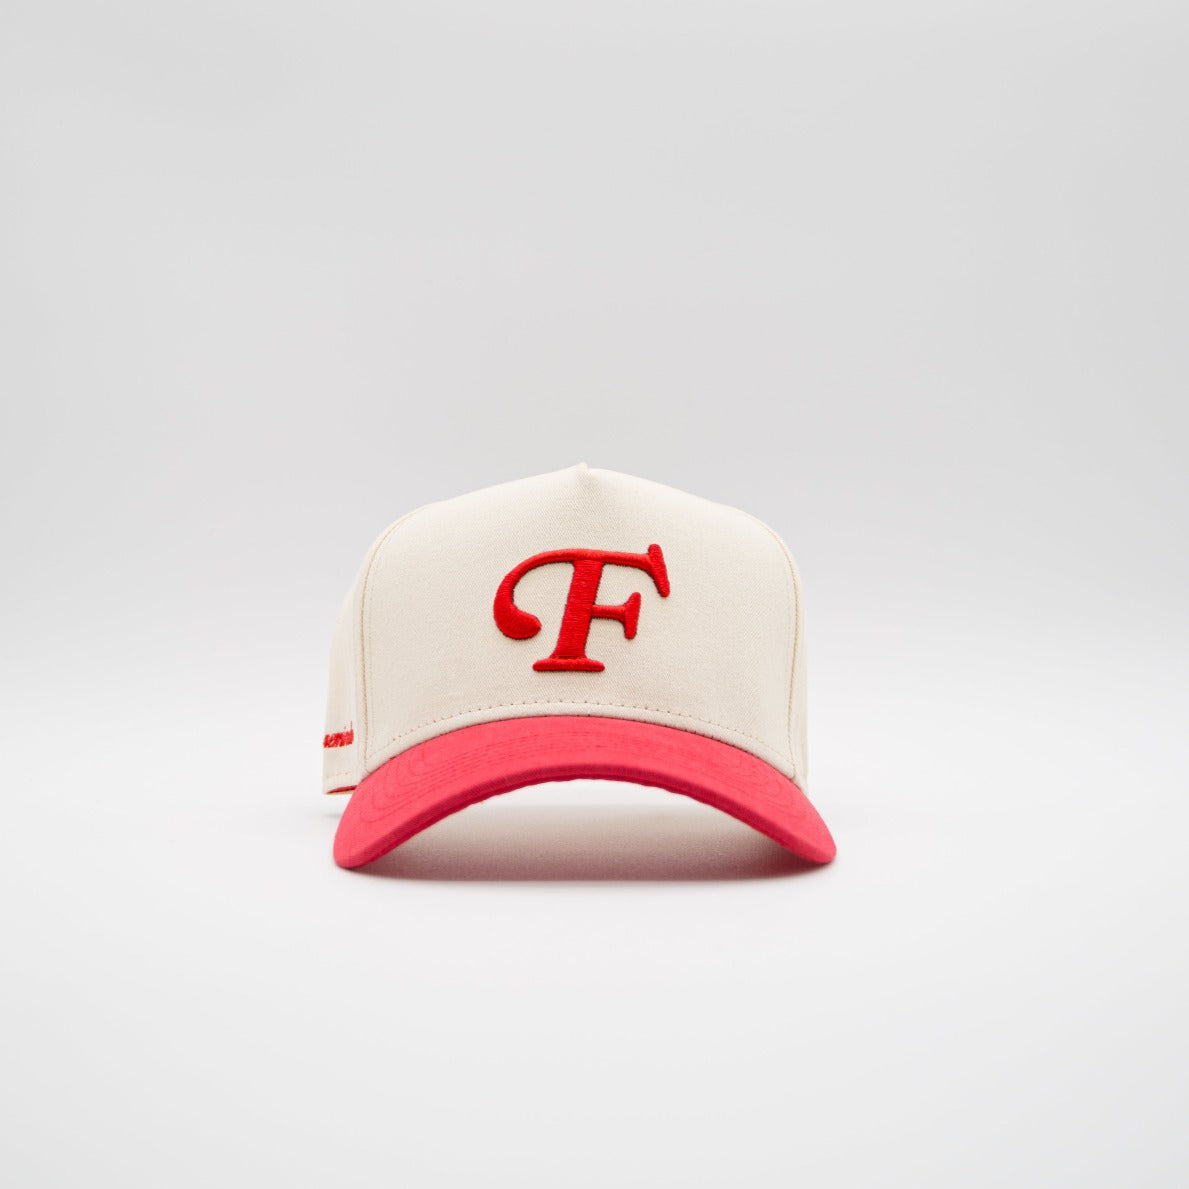 "F" Cap - Red/Cream